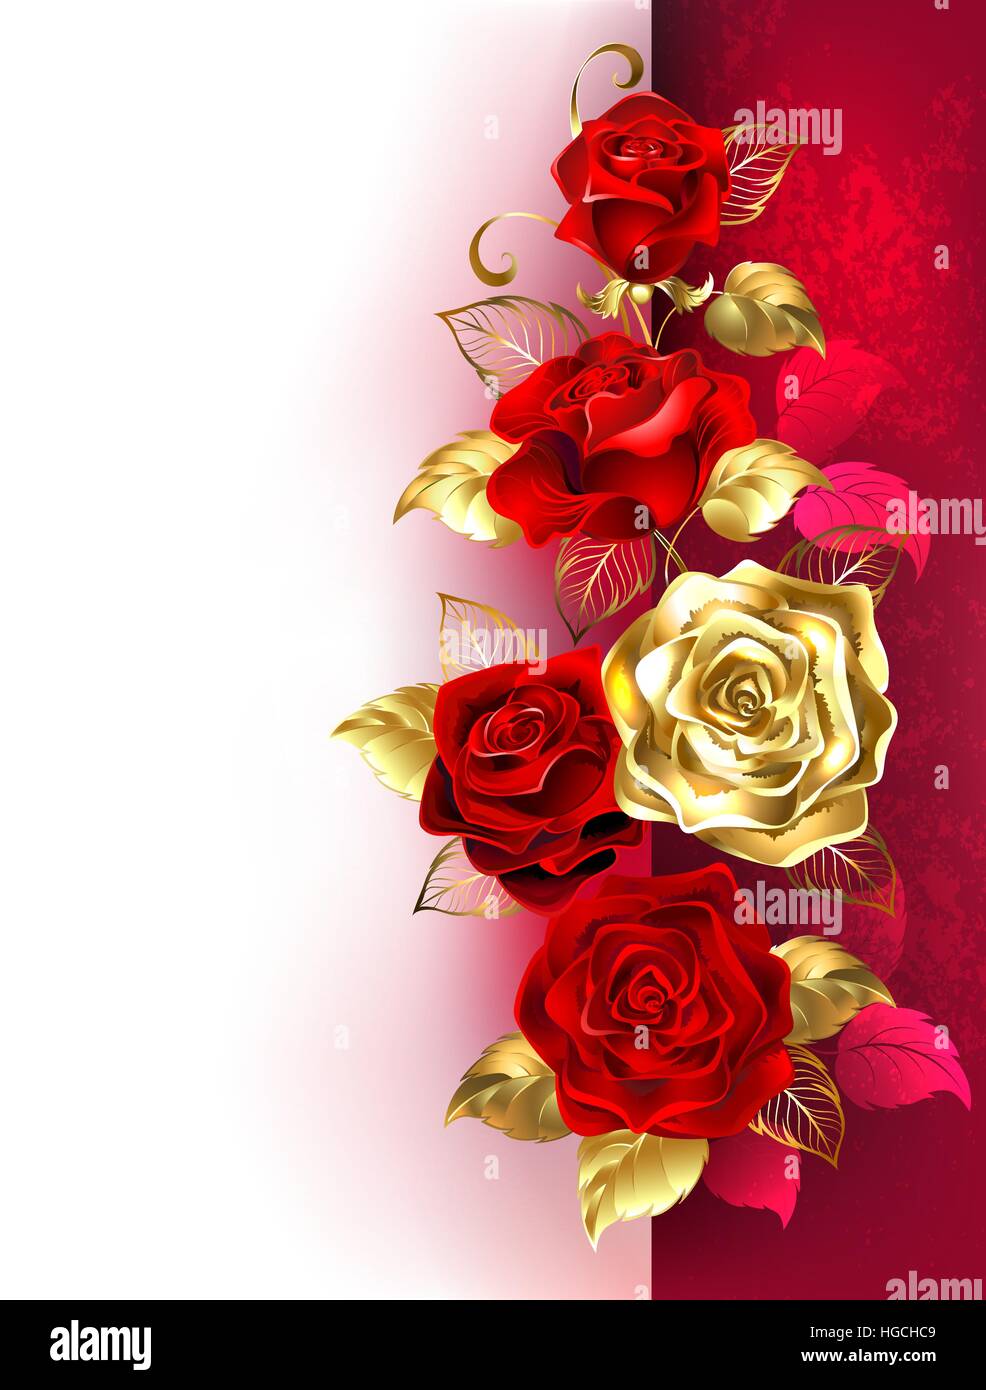 Design mit roten und goldenen Rosen auf weißem und rotem Hintergrund. Design mit Rosen. Stock Vektor